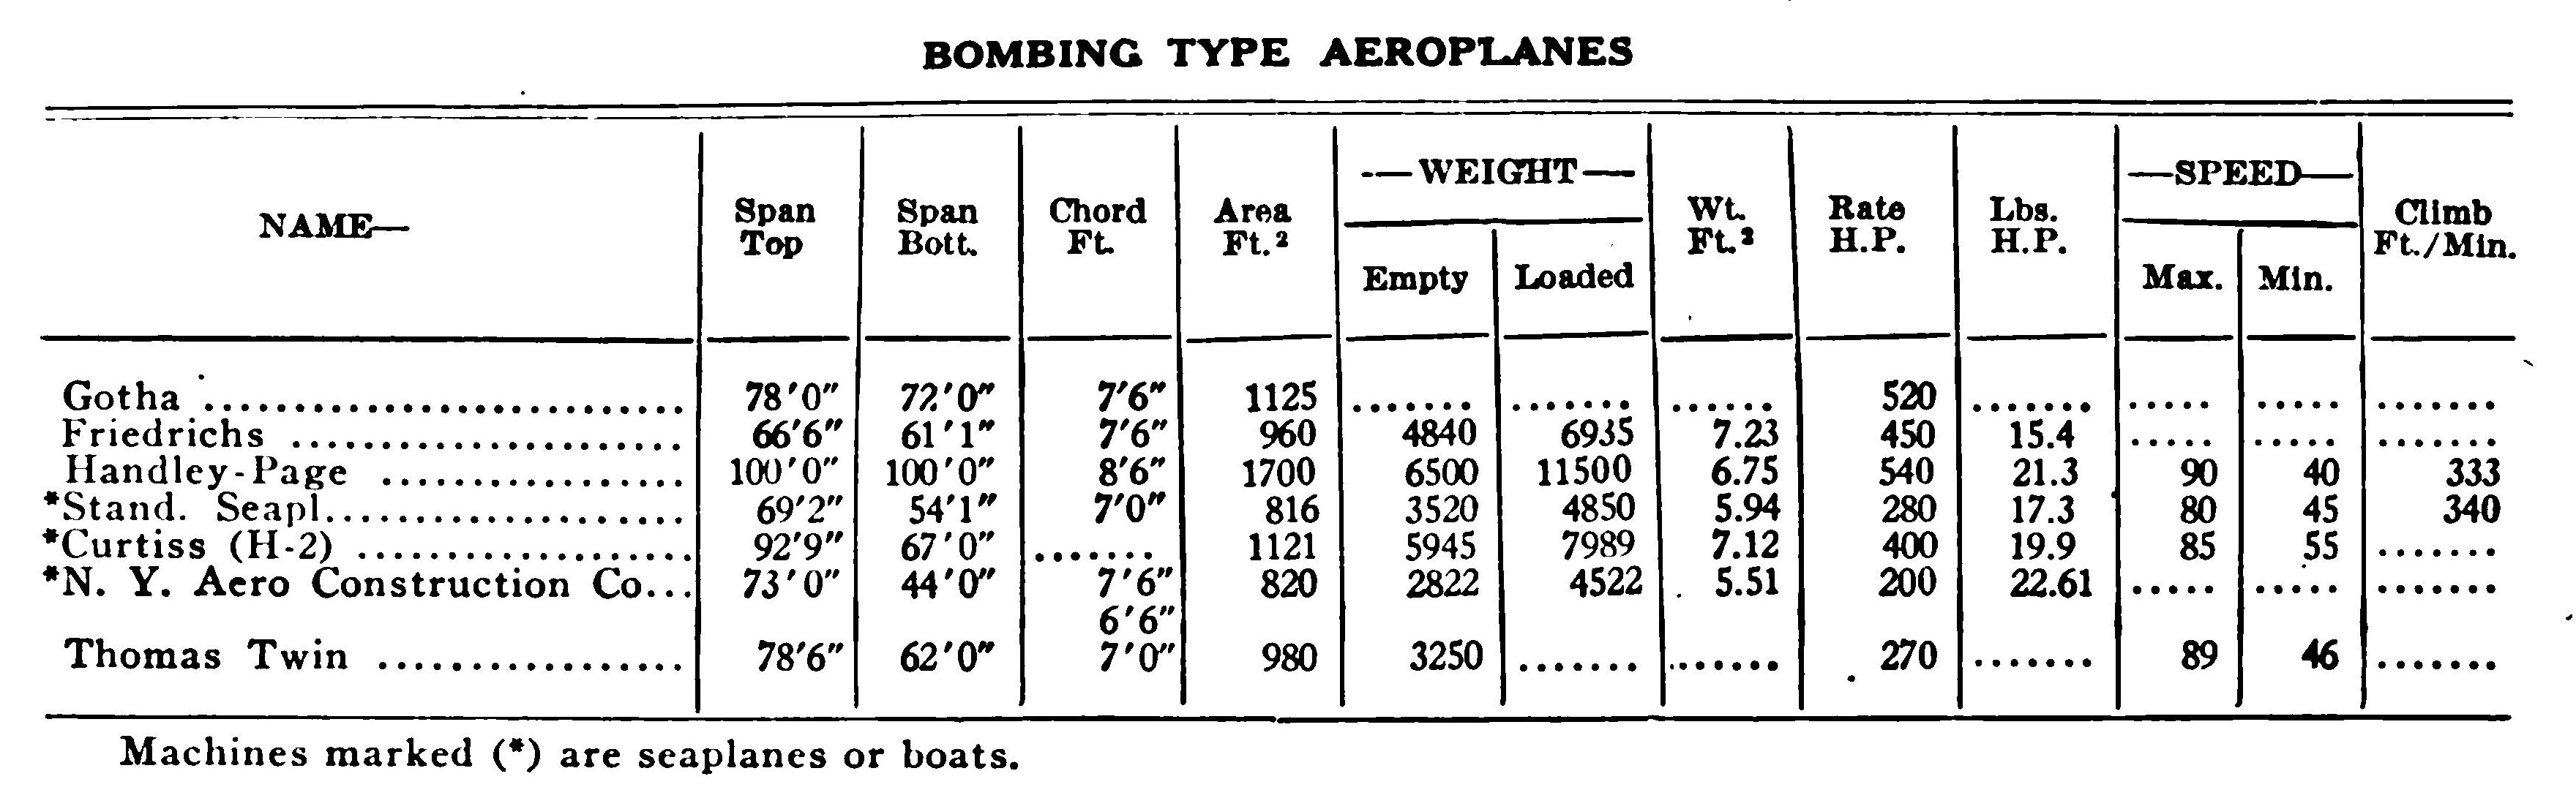 Table of Bombing Type Aeroplanes